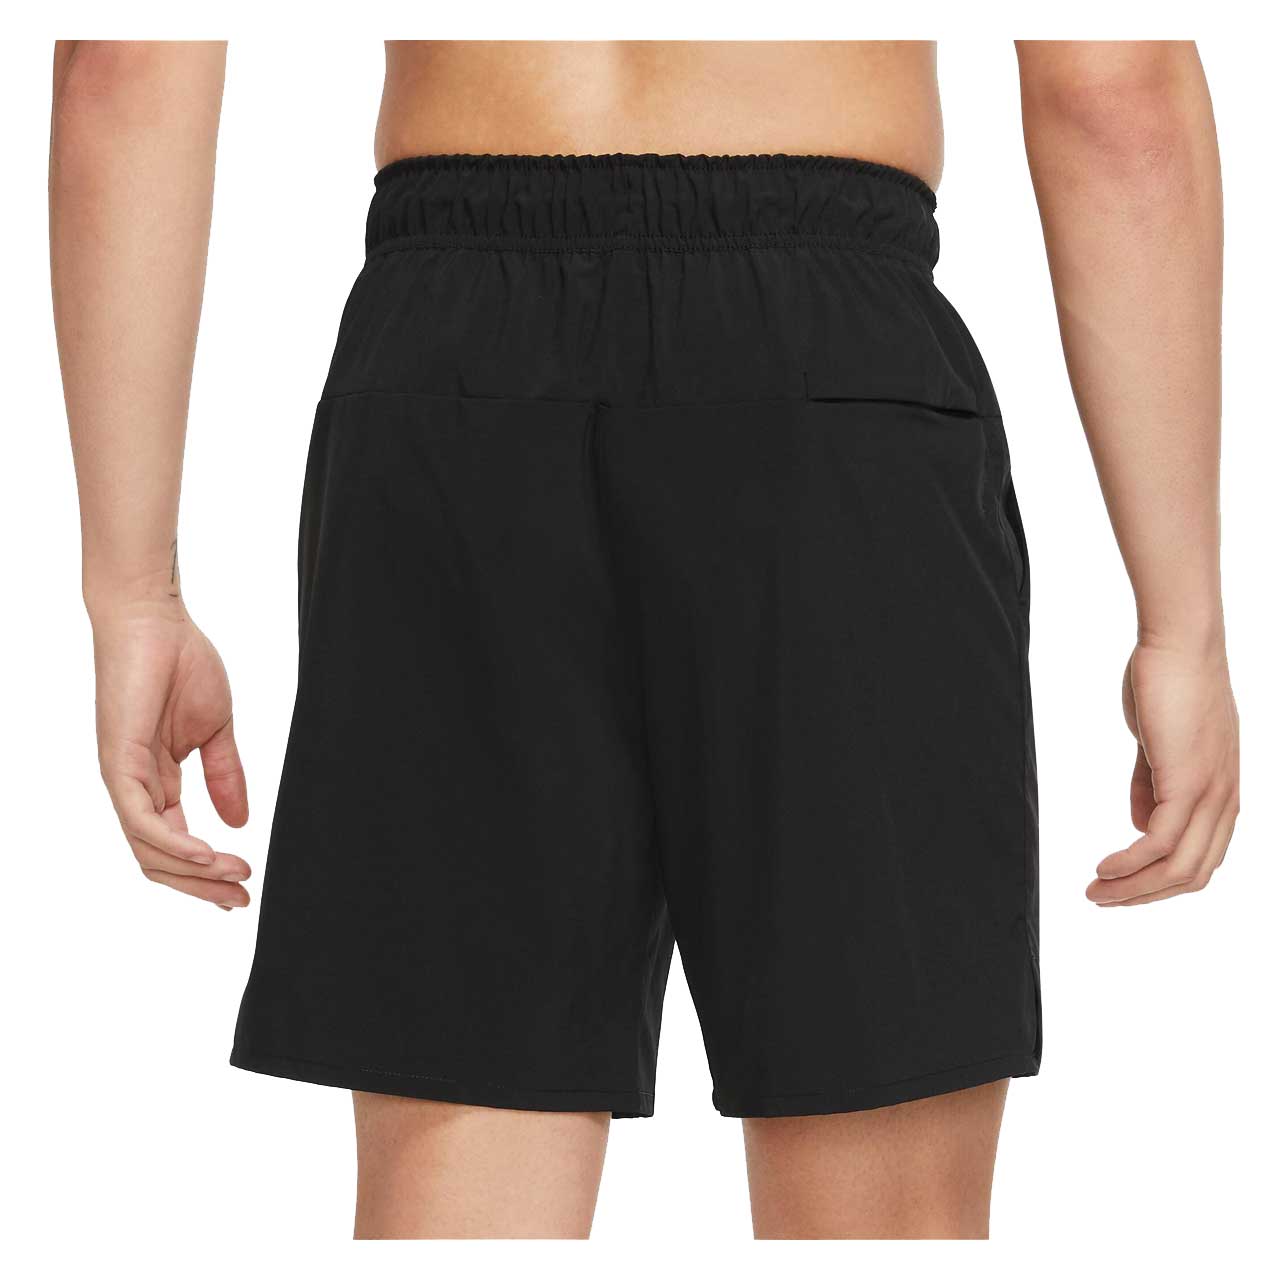 Herren Fitness Shorts